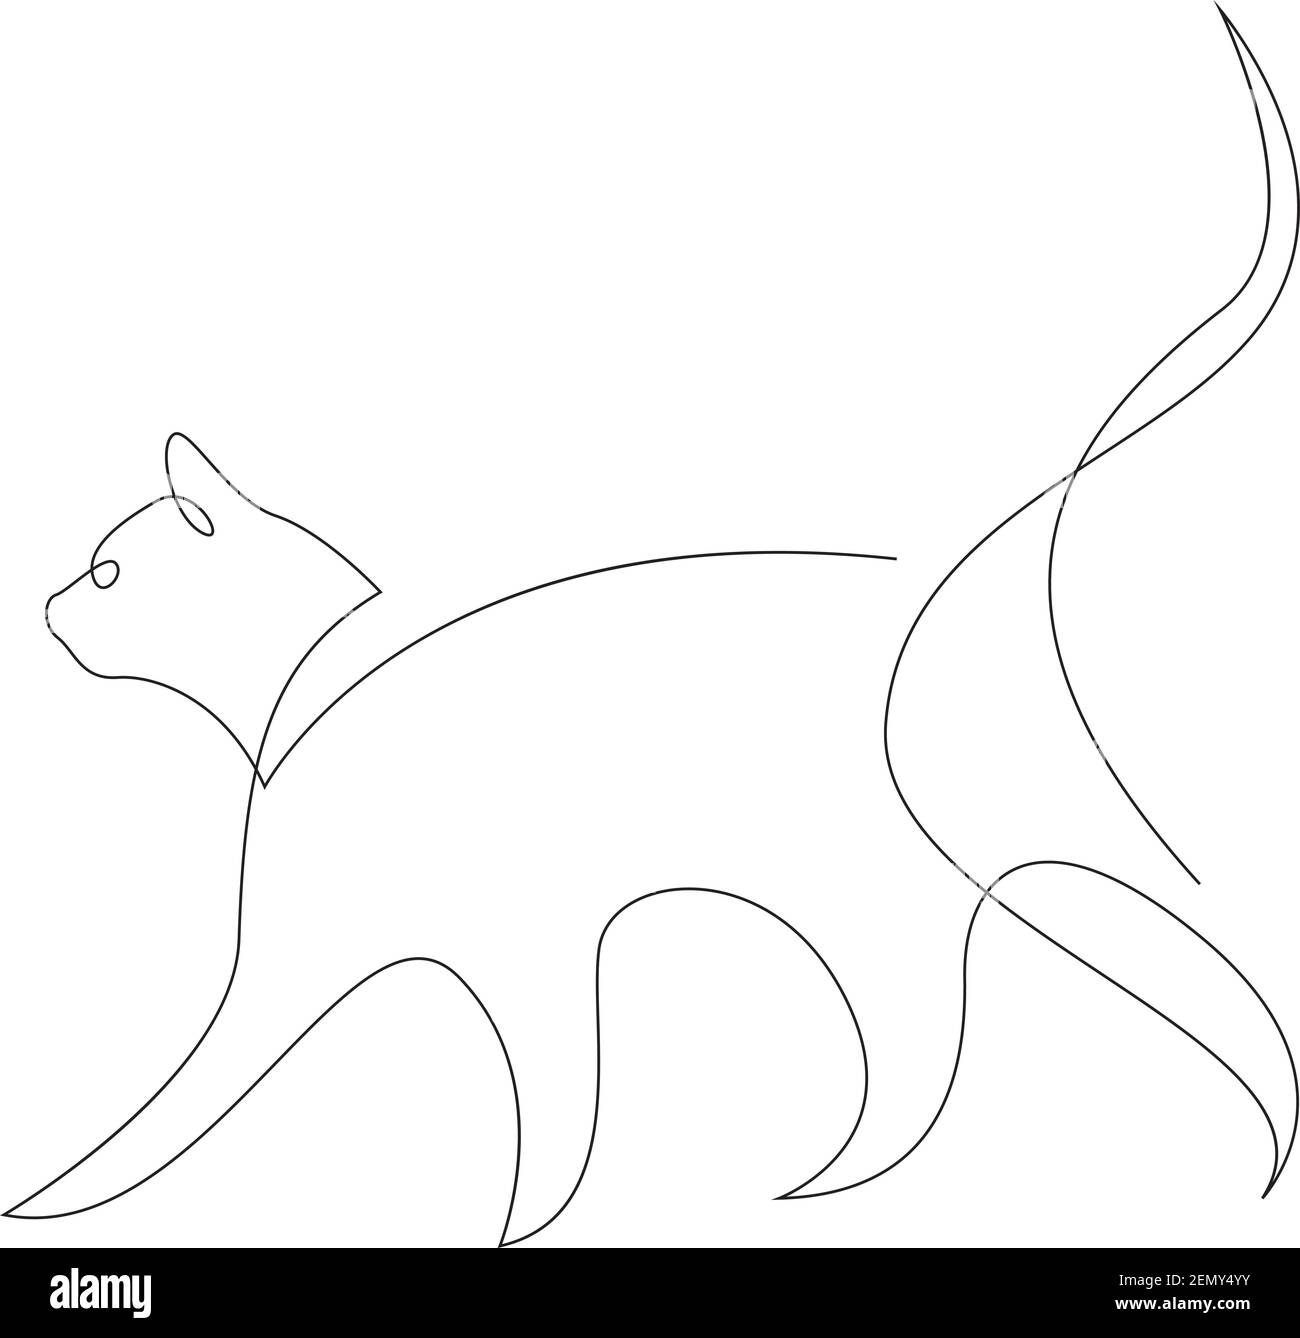 Silhouette de chat à une ligne. Illustration vectorielle de style minimalisme dessinée à la main Illustration de Vecteur